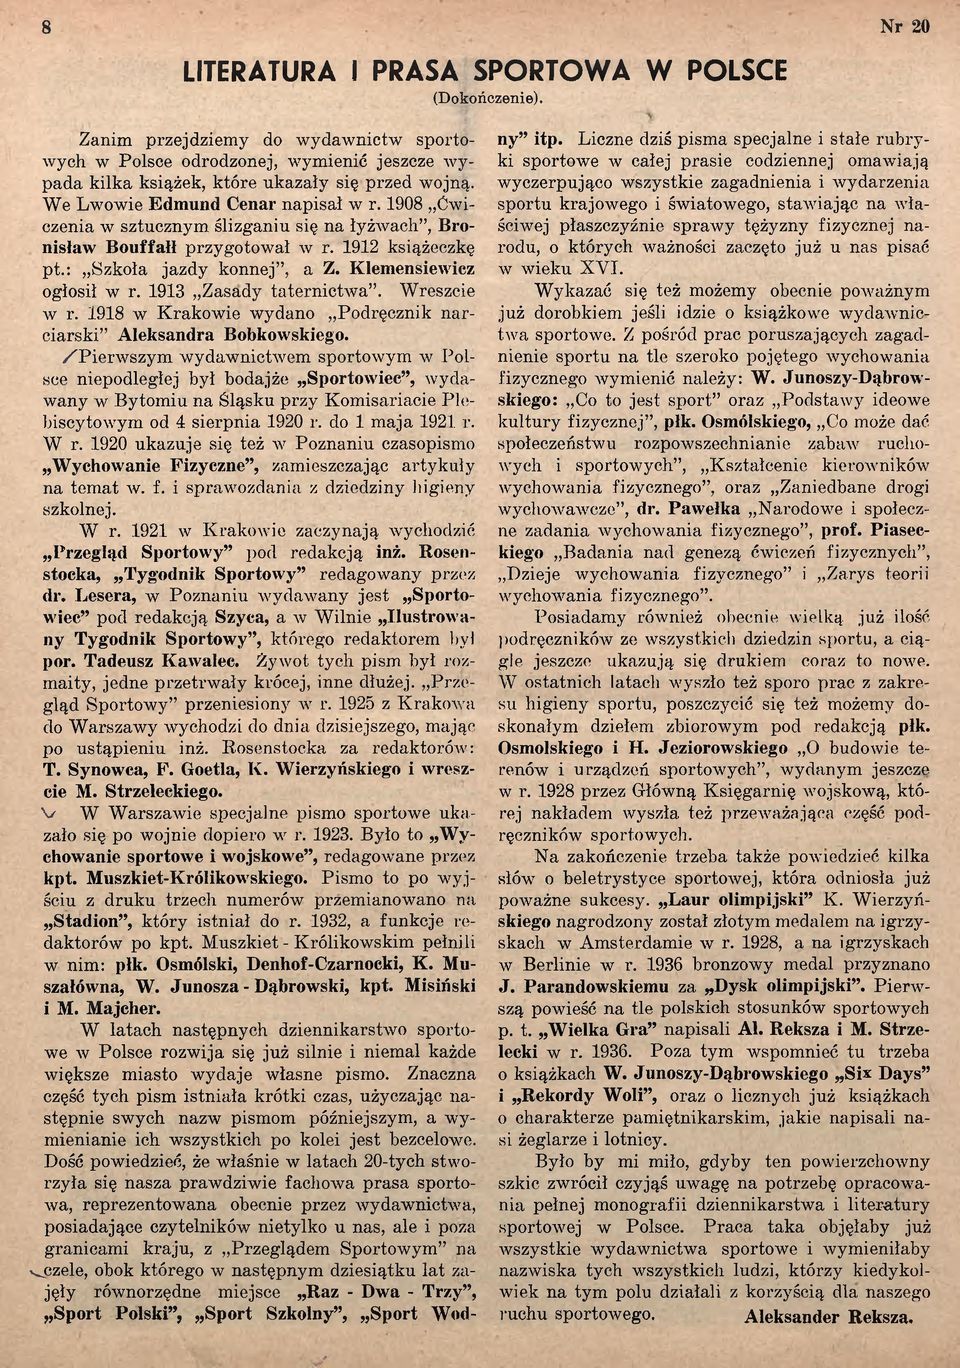 1913 Zasady taternictw a. Wreszcie av r. 1918 w Krakowie wydano Podręcznik n arciarski Aleksandra Bobkowskiego.